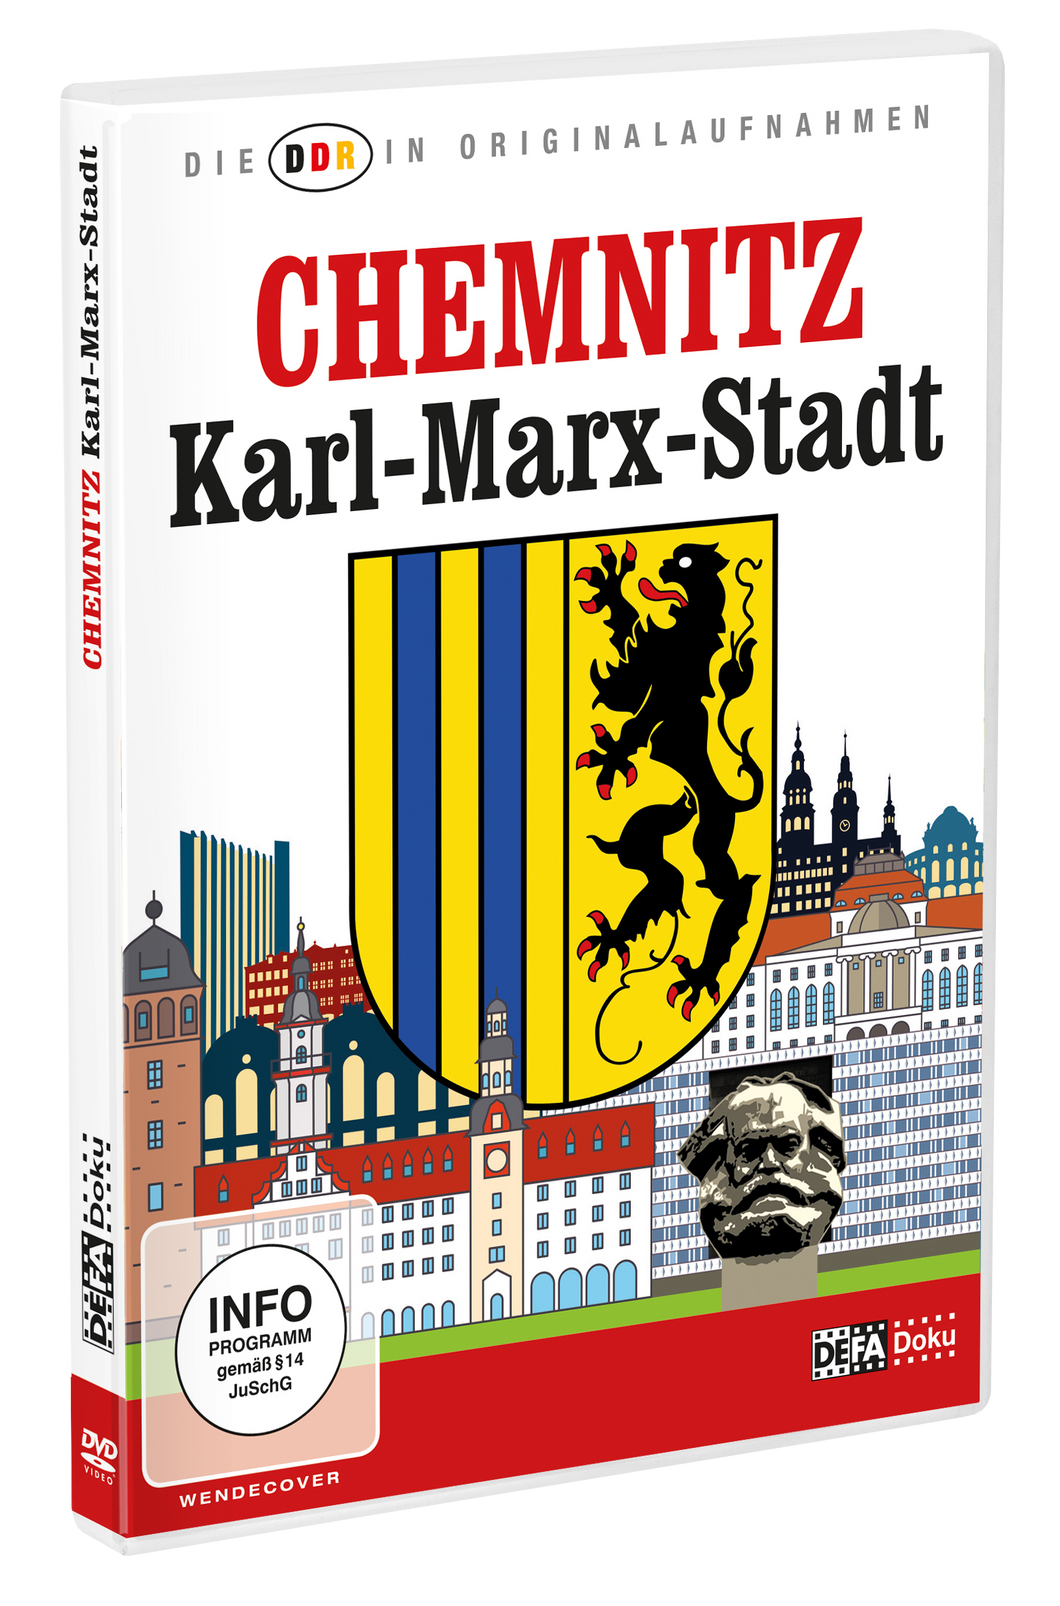 Die DDR in Originalaufnahmen - Karl-Marx-Stadt/Chemnitz